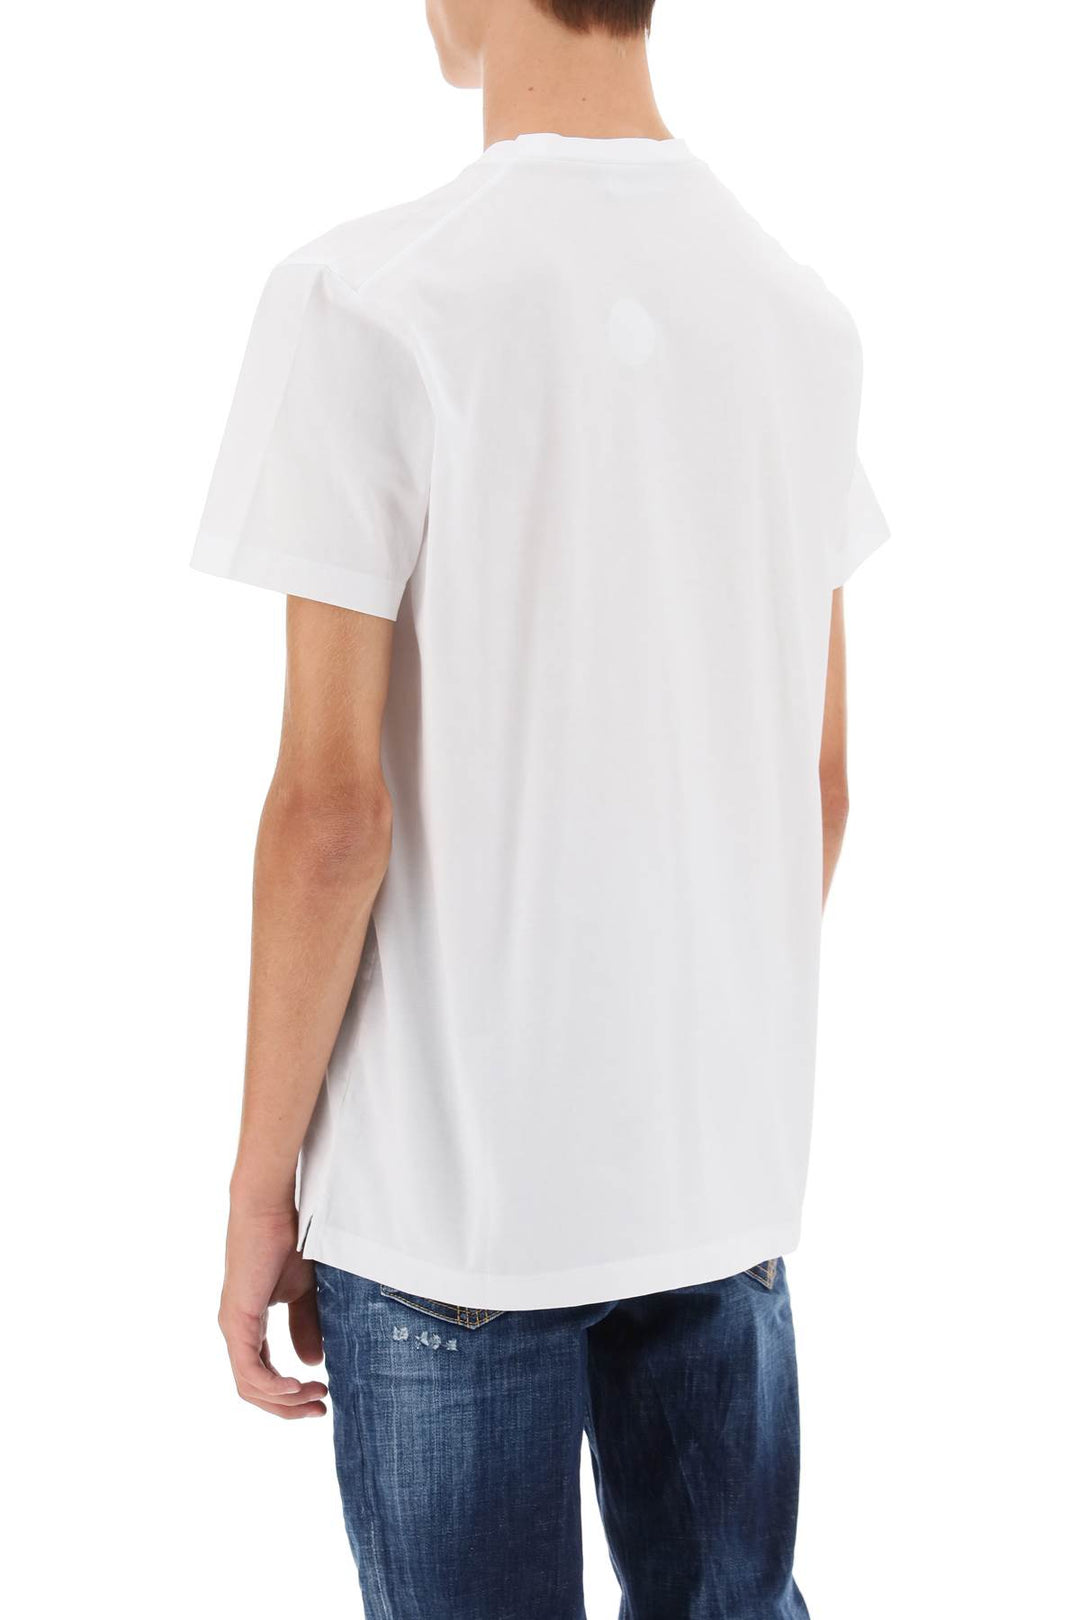 T Shirt Stampata Cigarette Fit - Dsquared2 - Uomo